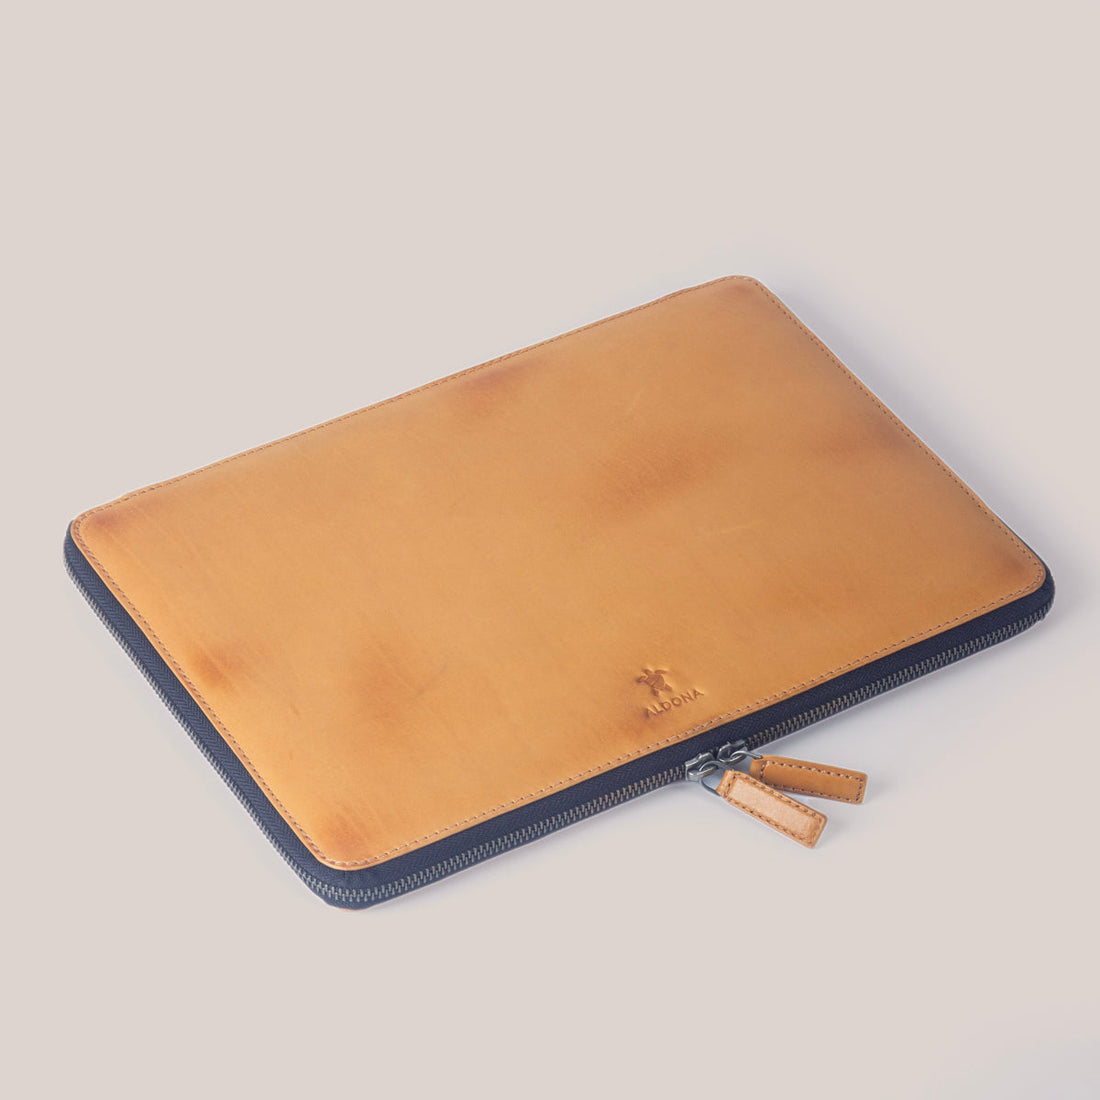 MacBook Pro 13 Zippered Laptop Case - Felt and Tan Crunch